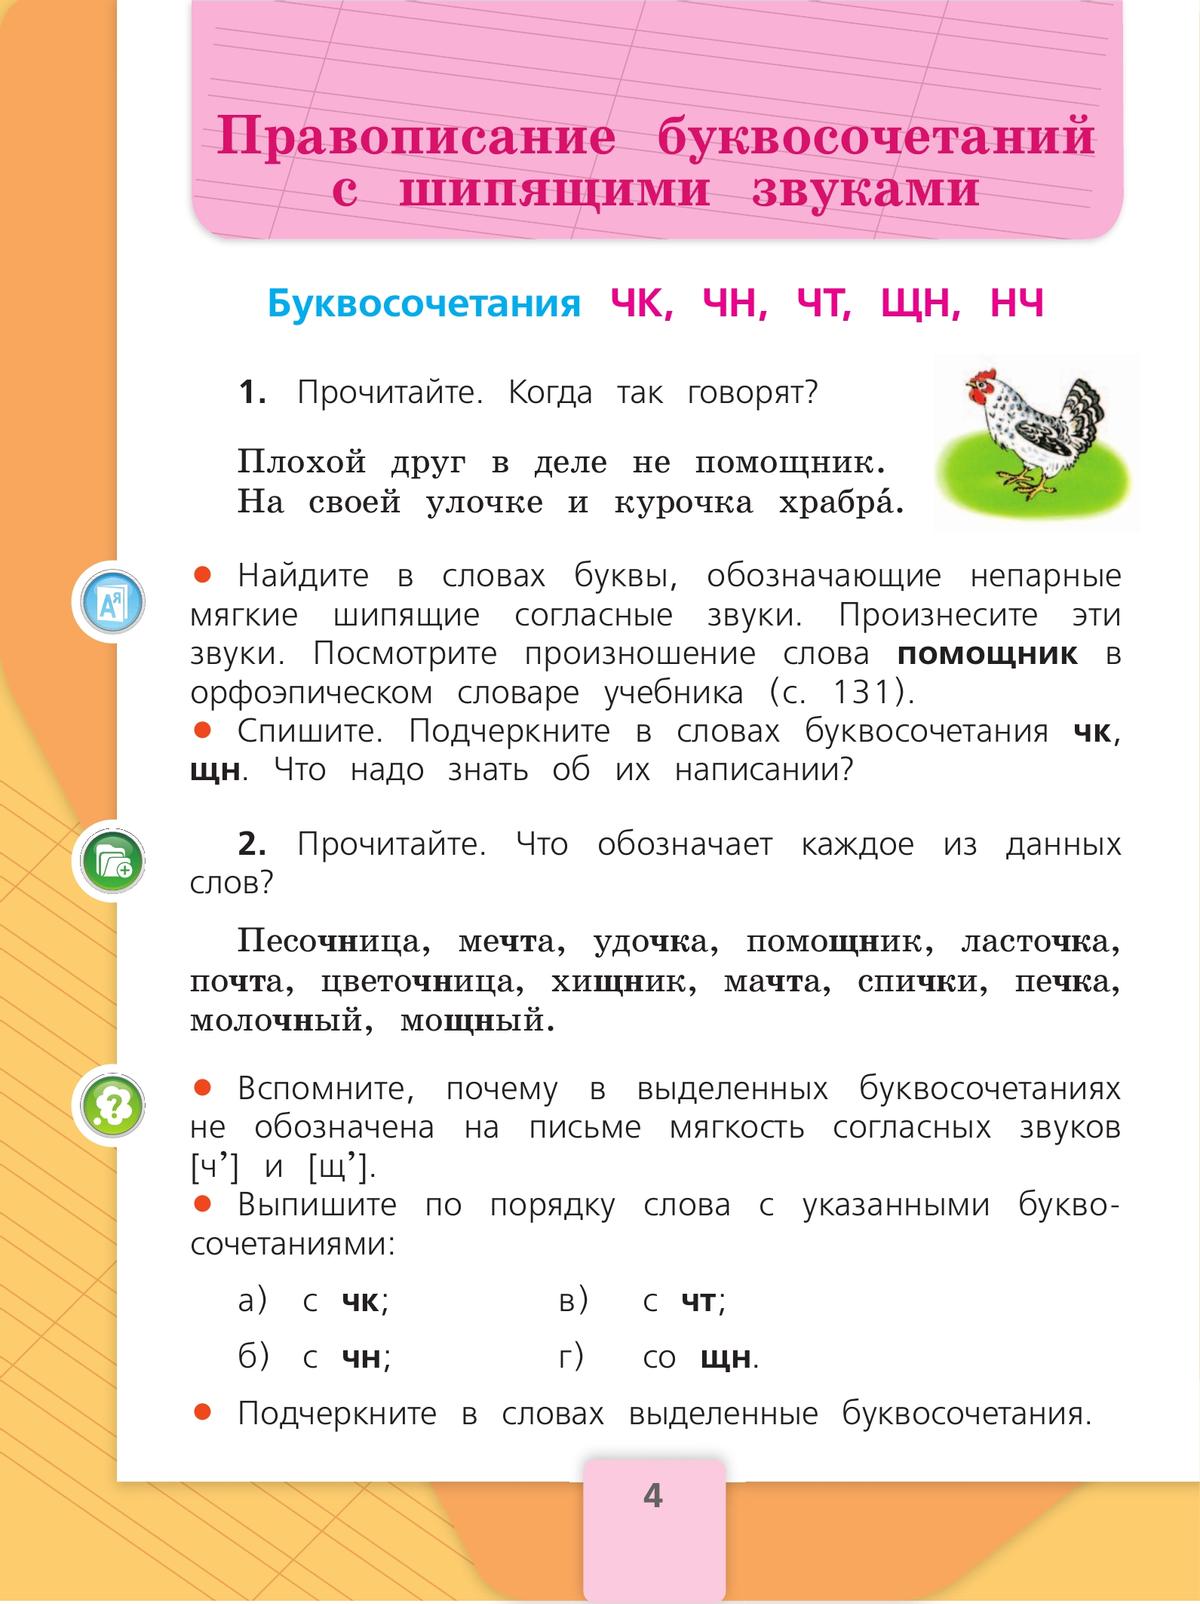 Русский язык. 2 класс. Учебник. В 2 ч. Часть 2 7